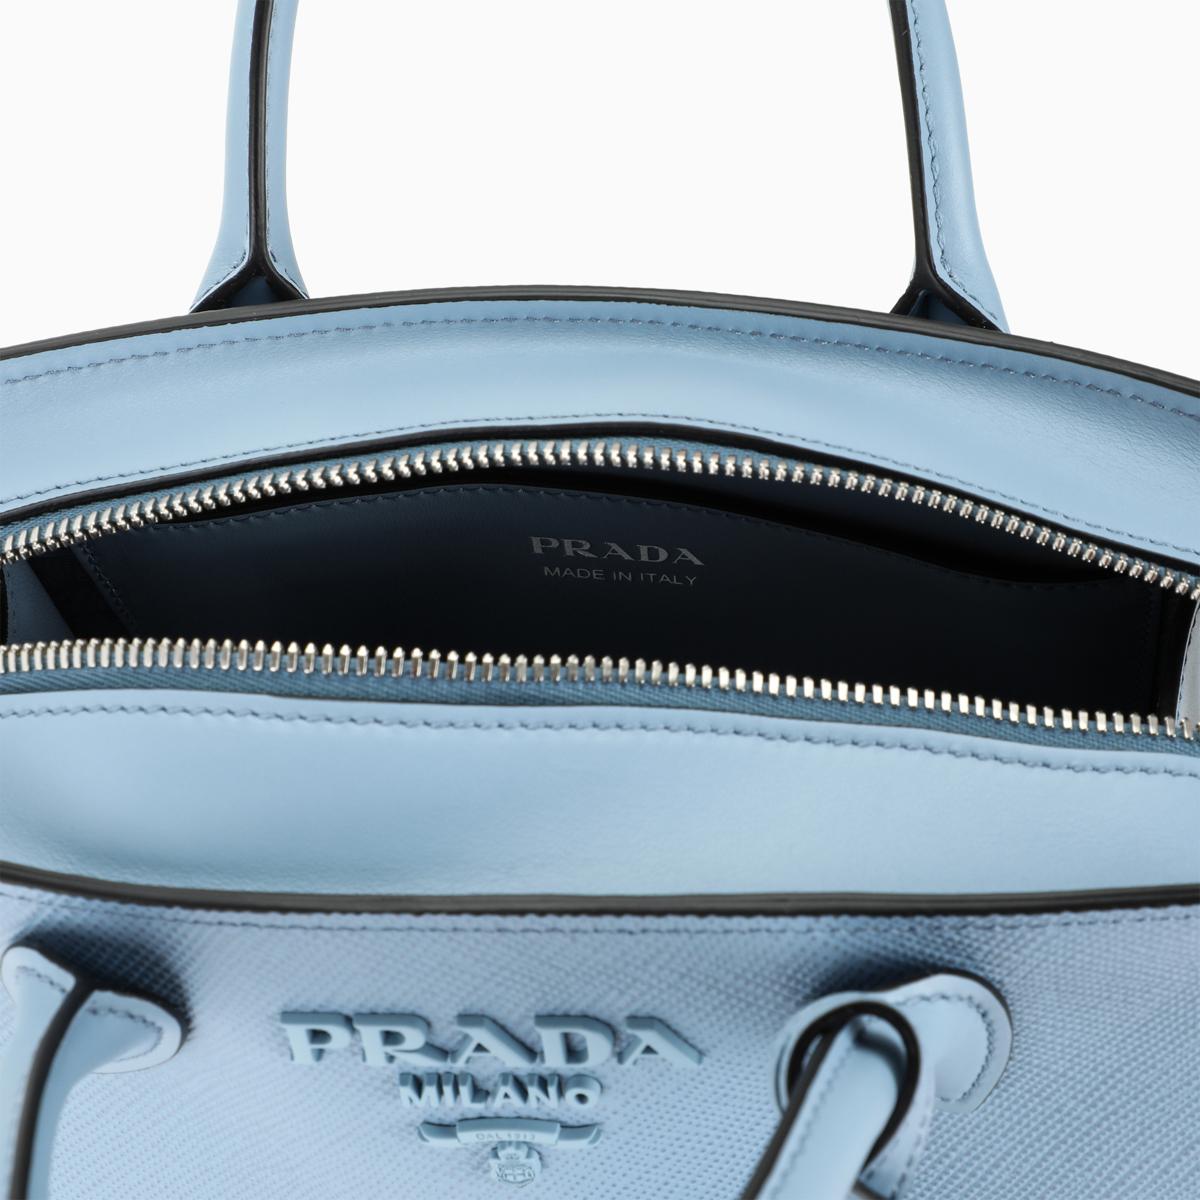 Prada Light-blue Monochrome Bag